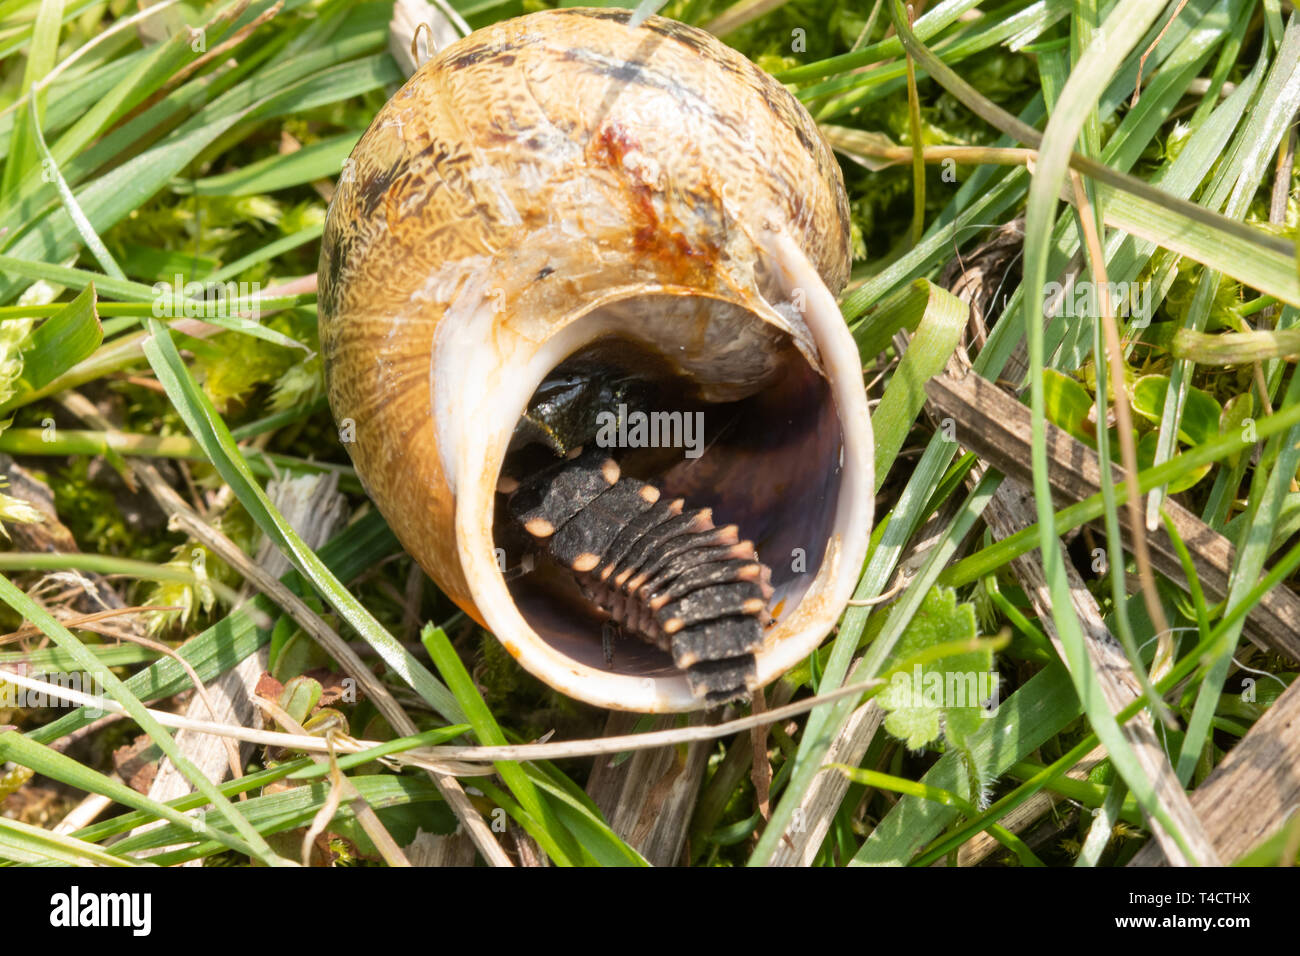 Larve de vers luisants (Lampyris noctiluca) se nourrissant d'un escargot dans le Hampshire, au Royaume-Uni, en avril Banque D'Images